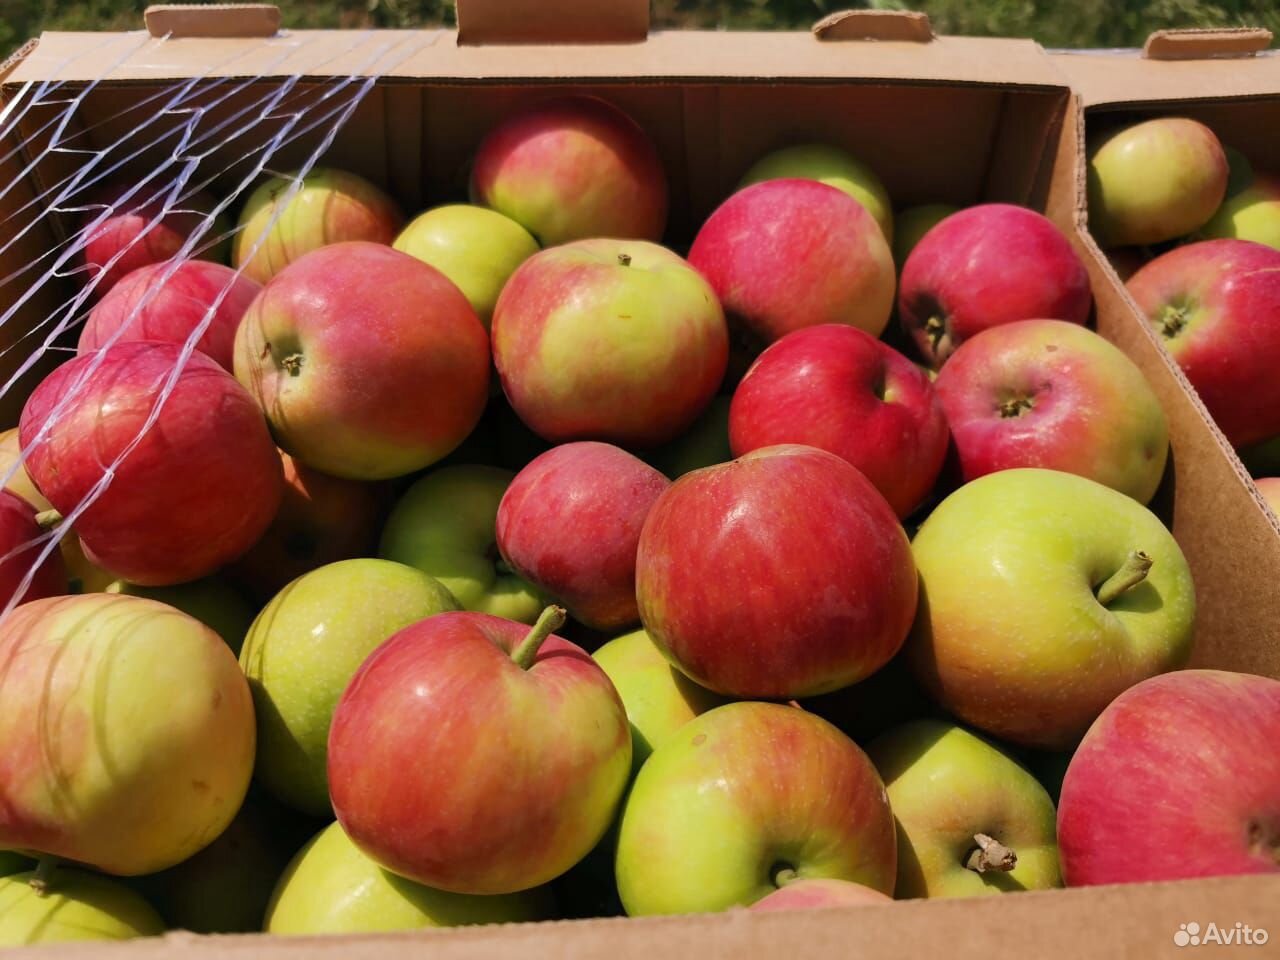 Авито ру яблоки в Крыму или в Краснодаре. Продажа яблоки в КБР авито. Авито яблоки купить в Кабардино. Куплю яблоки ростов